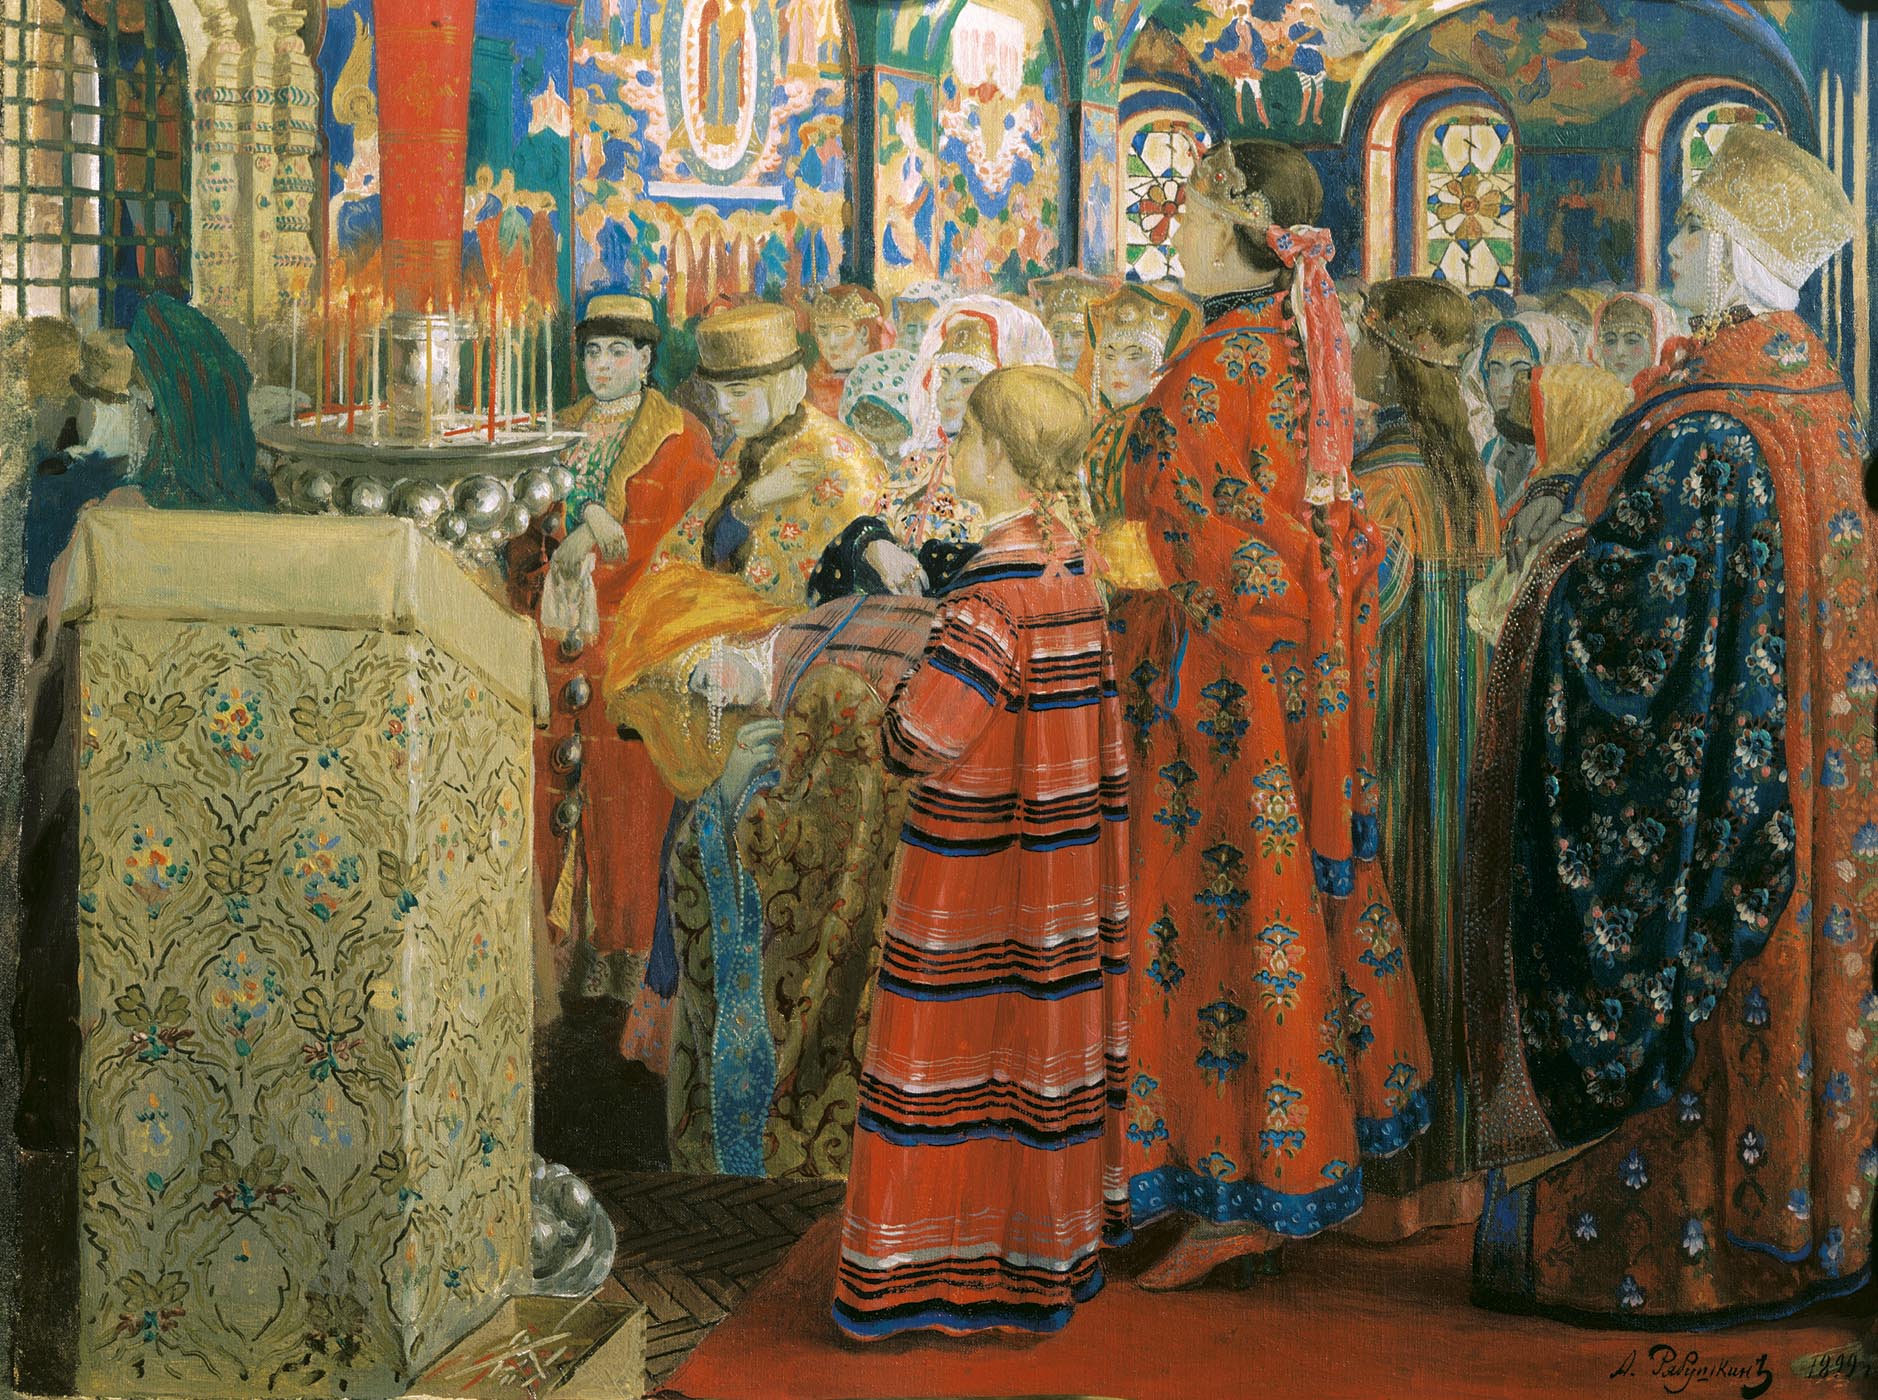 Андрей Петрович Рябушкин. "Русские женщины XVII столетия в церкви". 1899.